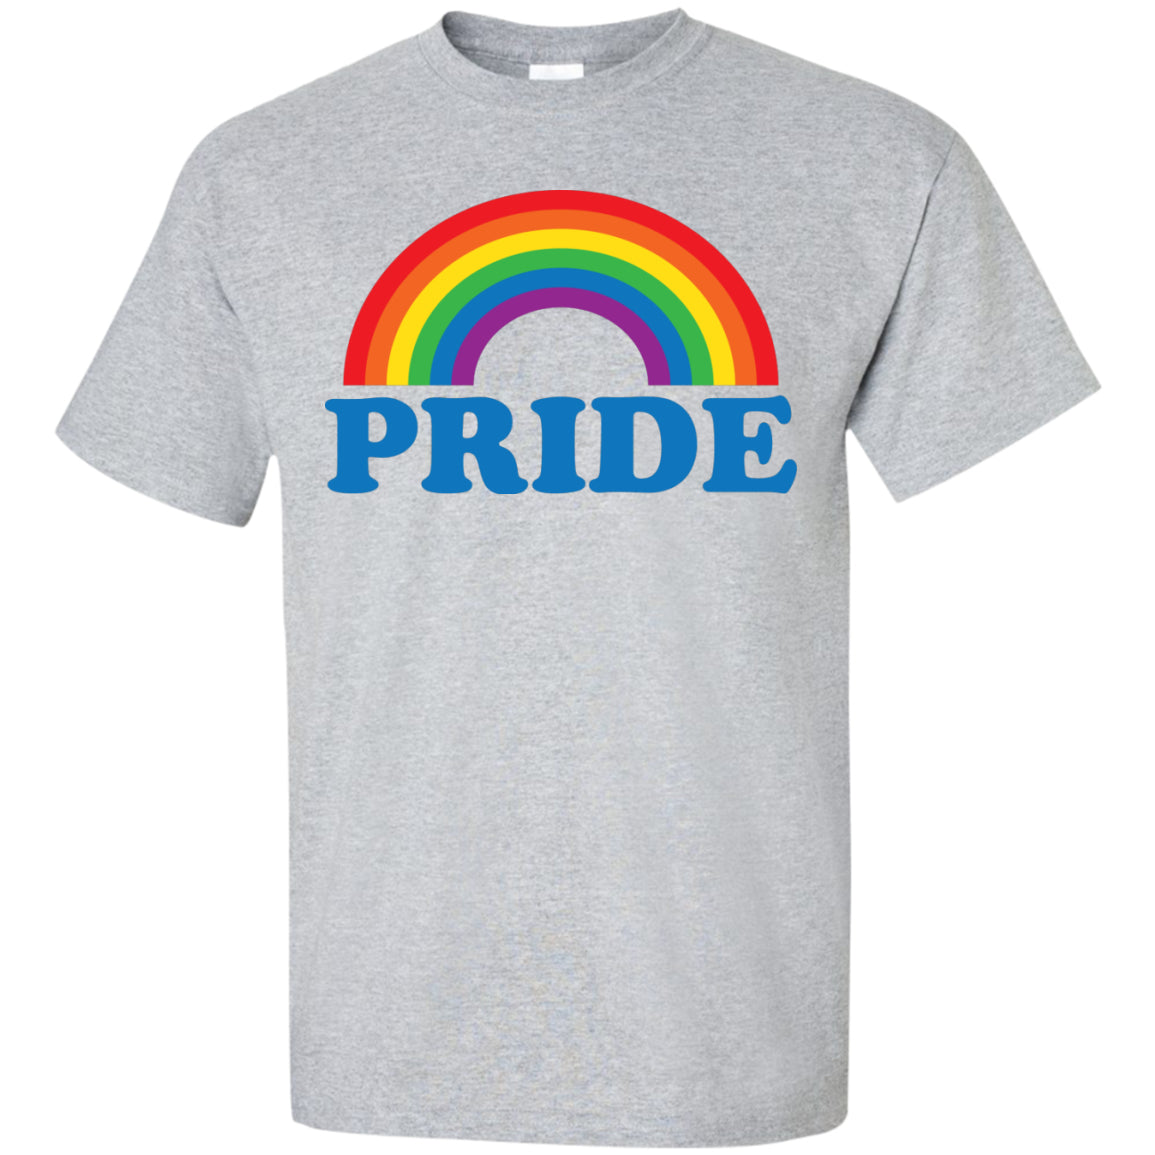 gay pride shirt sydney